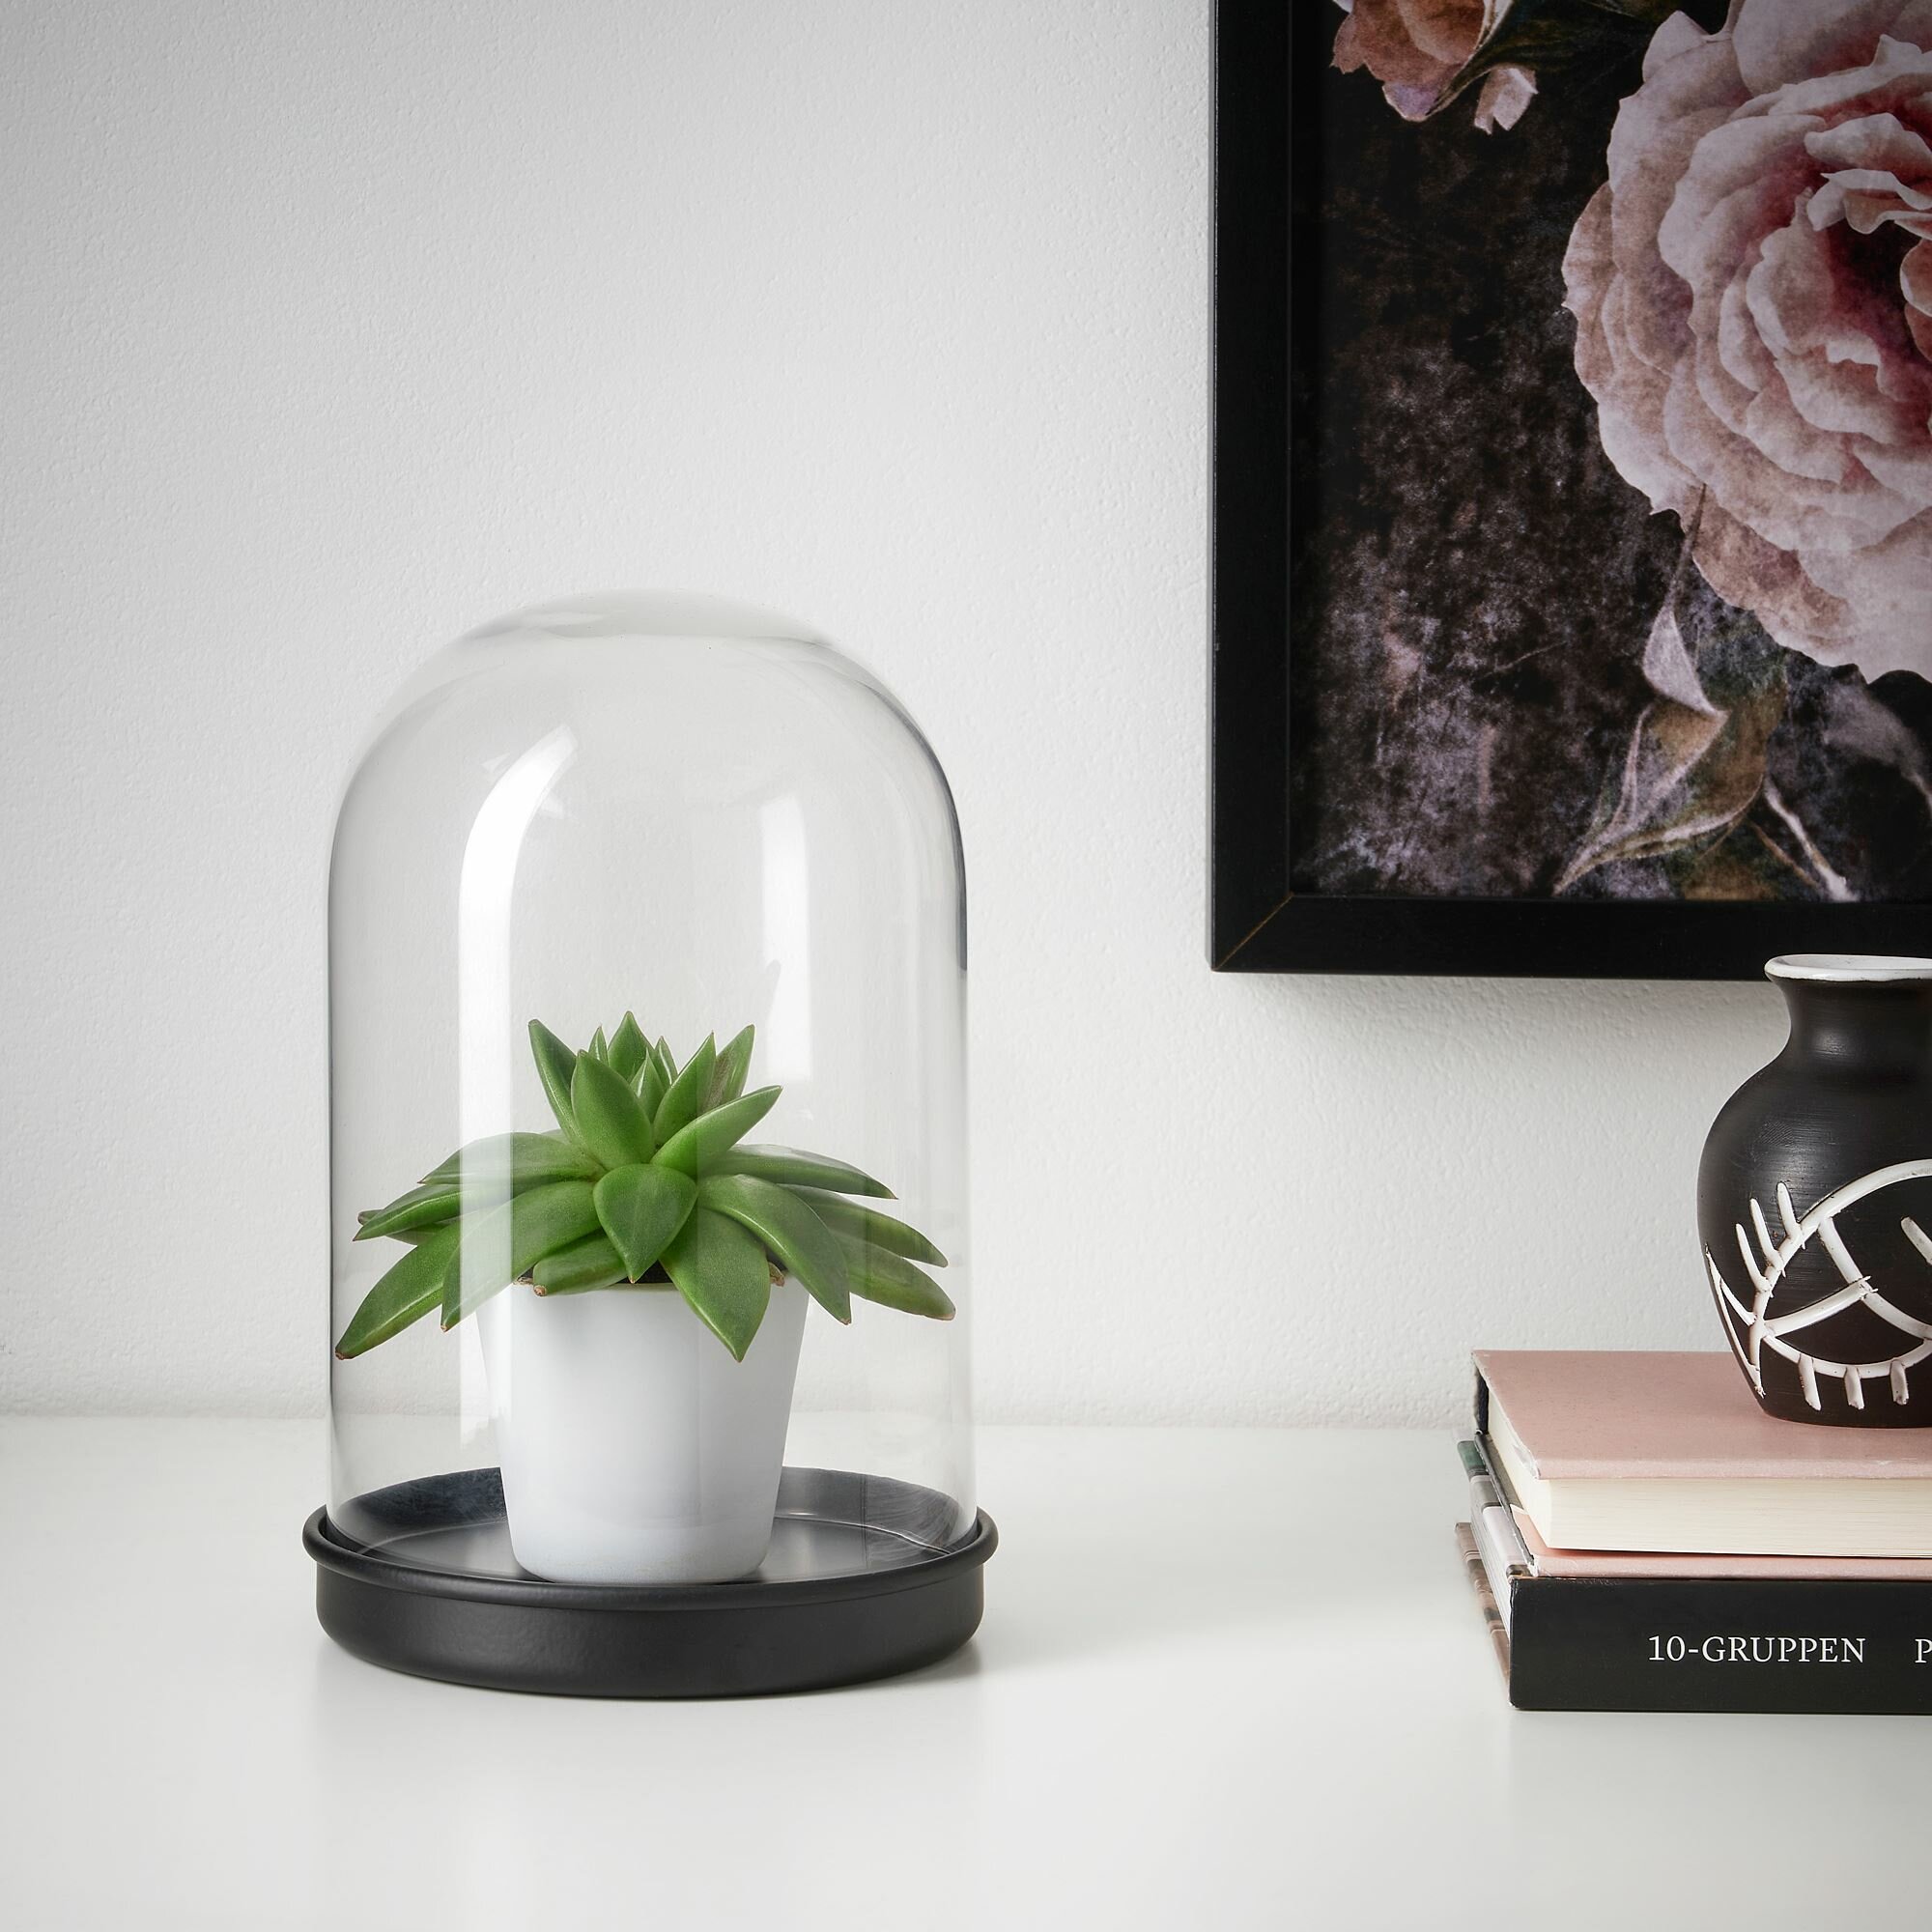 Икея / IKEA SKONJA, сконя, глобус стеклянный с подставкой, черный, 21 см